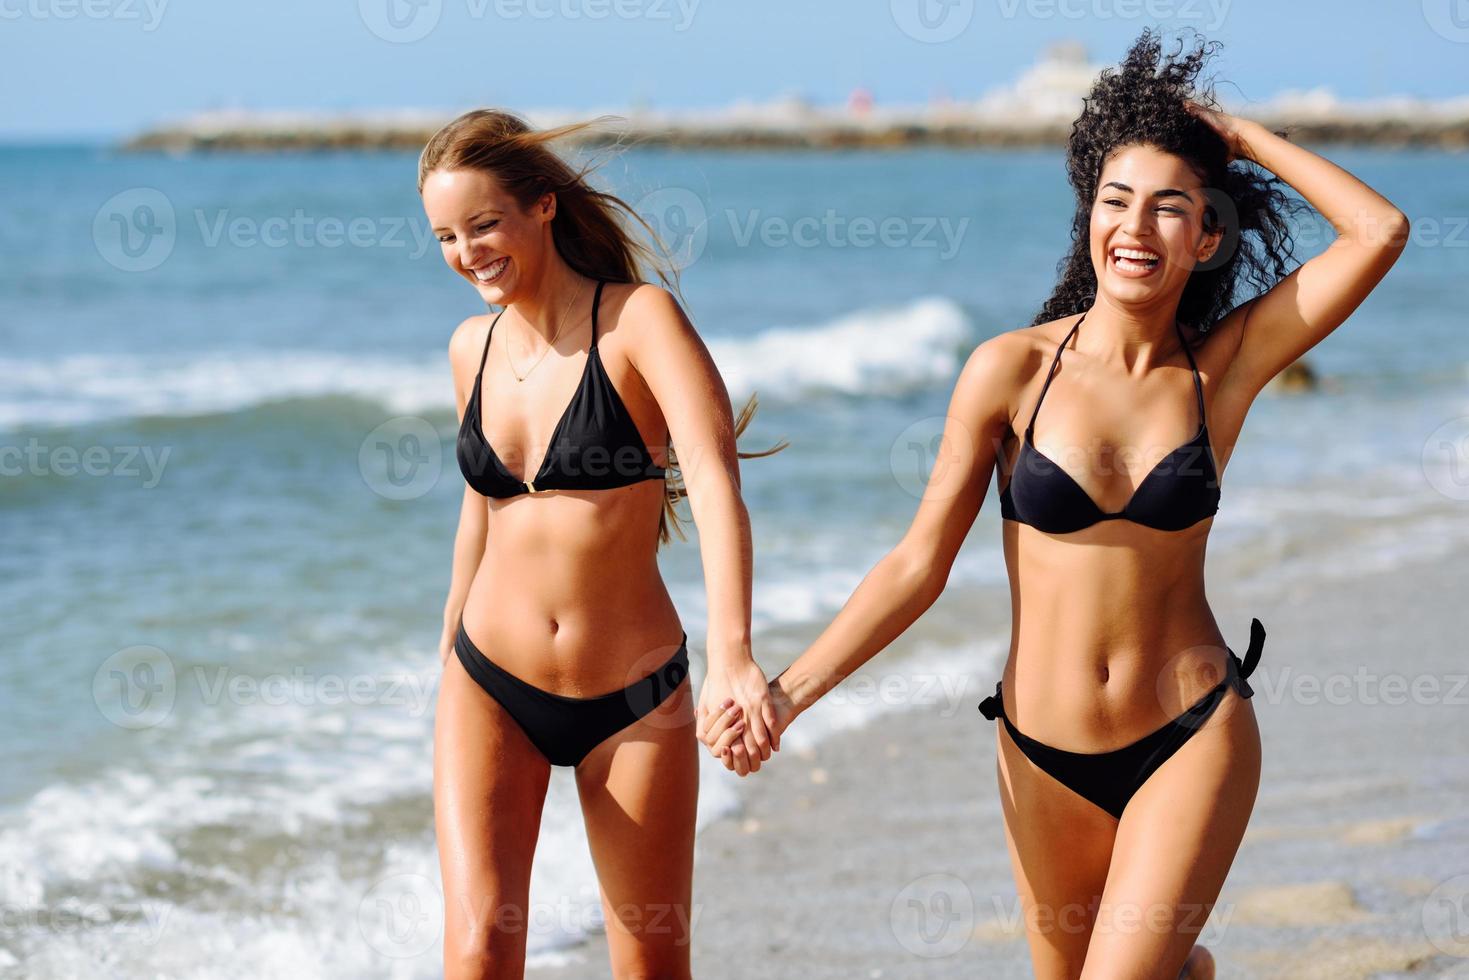 deux jeunes femmes avec de beaux corps en maillot de bain sur une plage tropicale photo